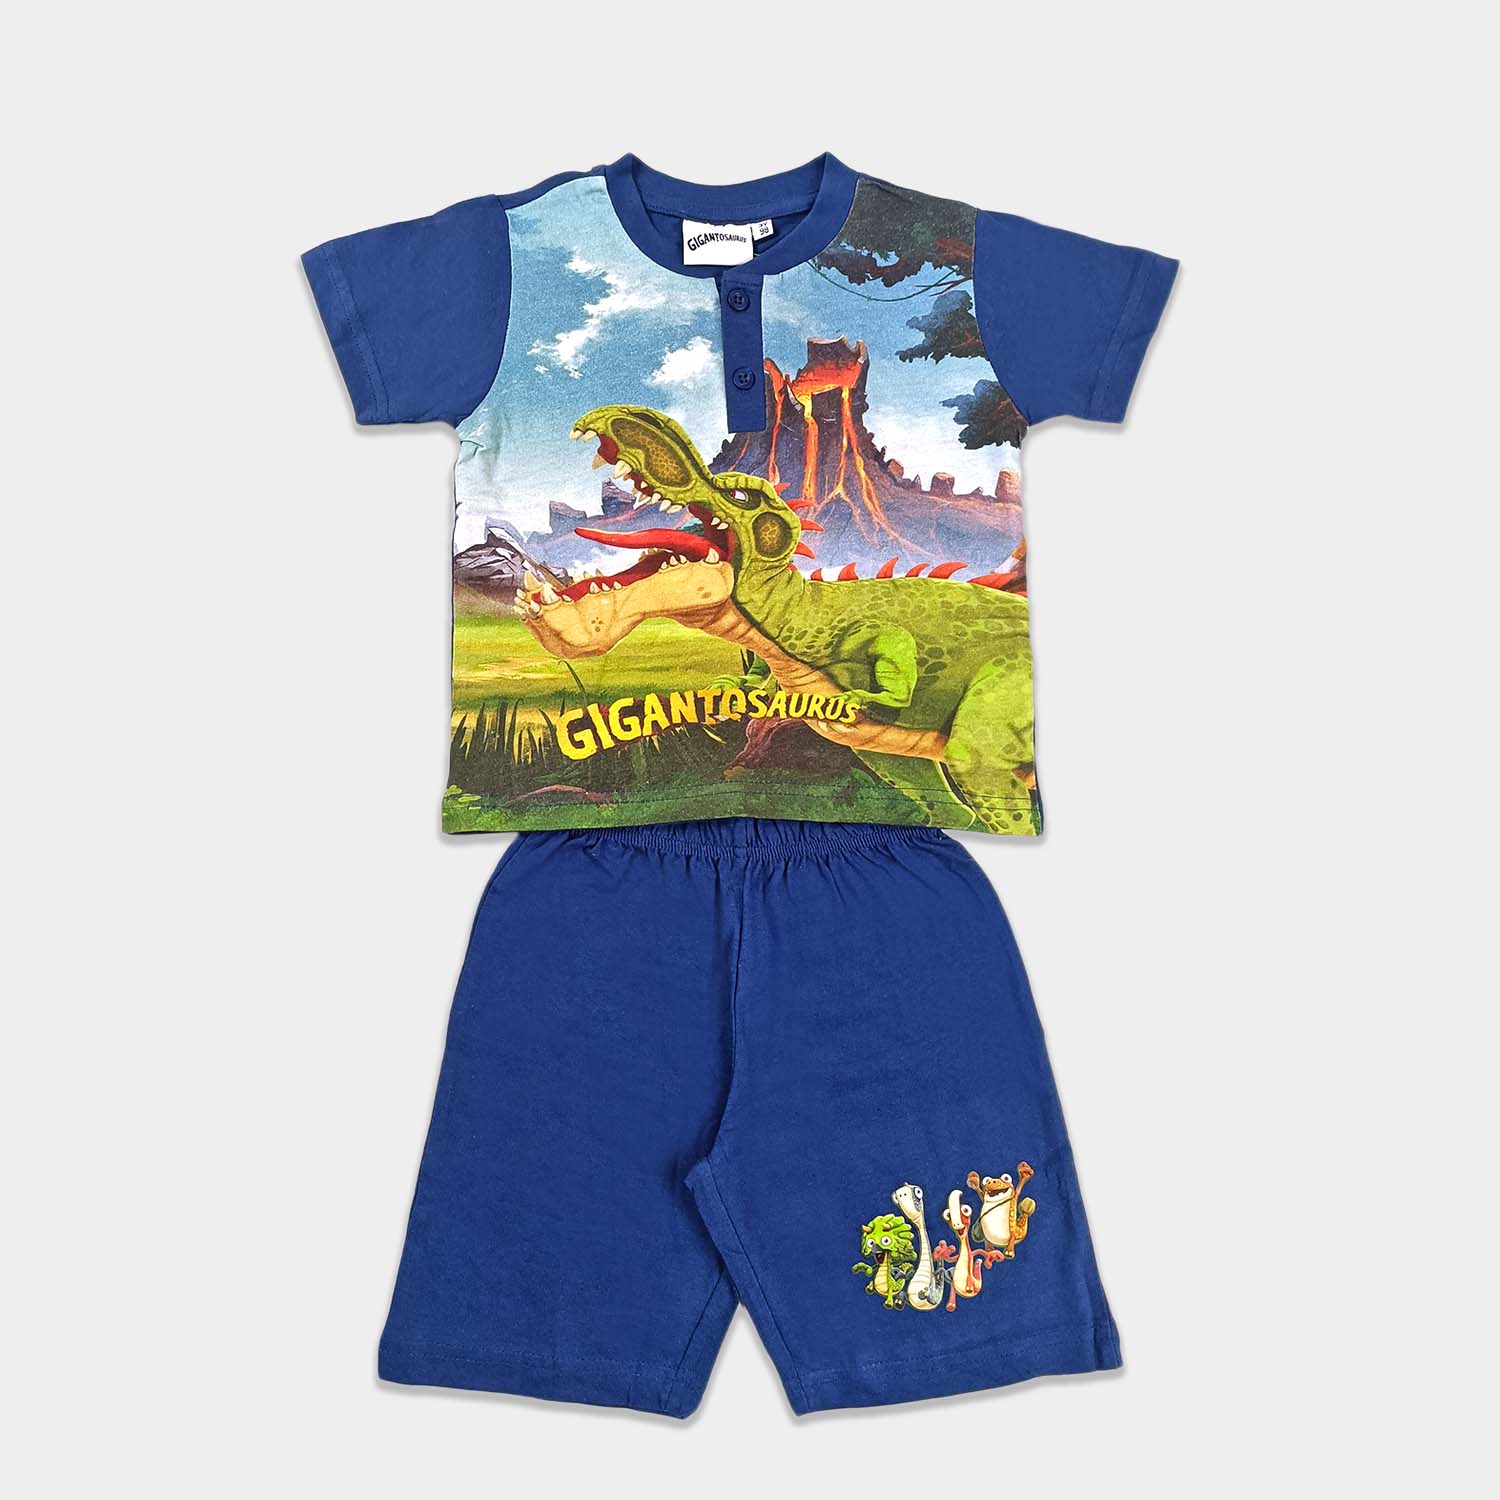 Gigantosaurus Pijamas para Niños 